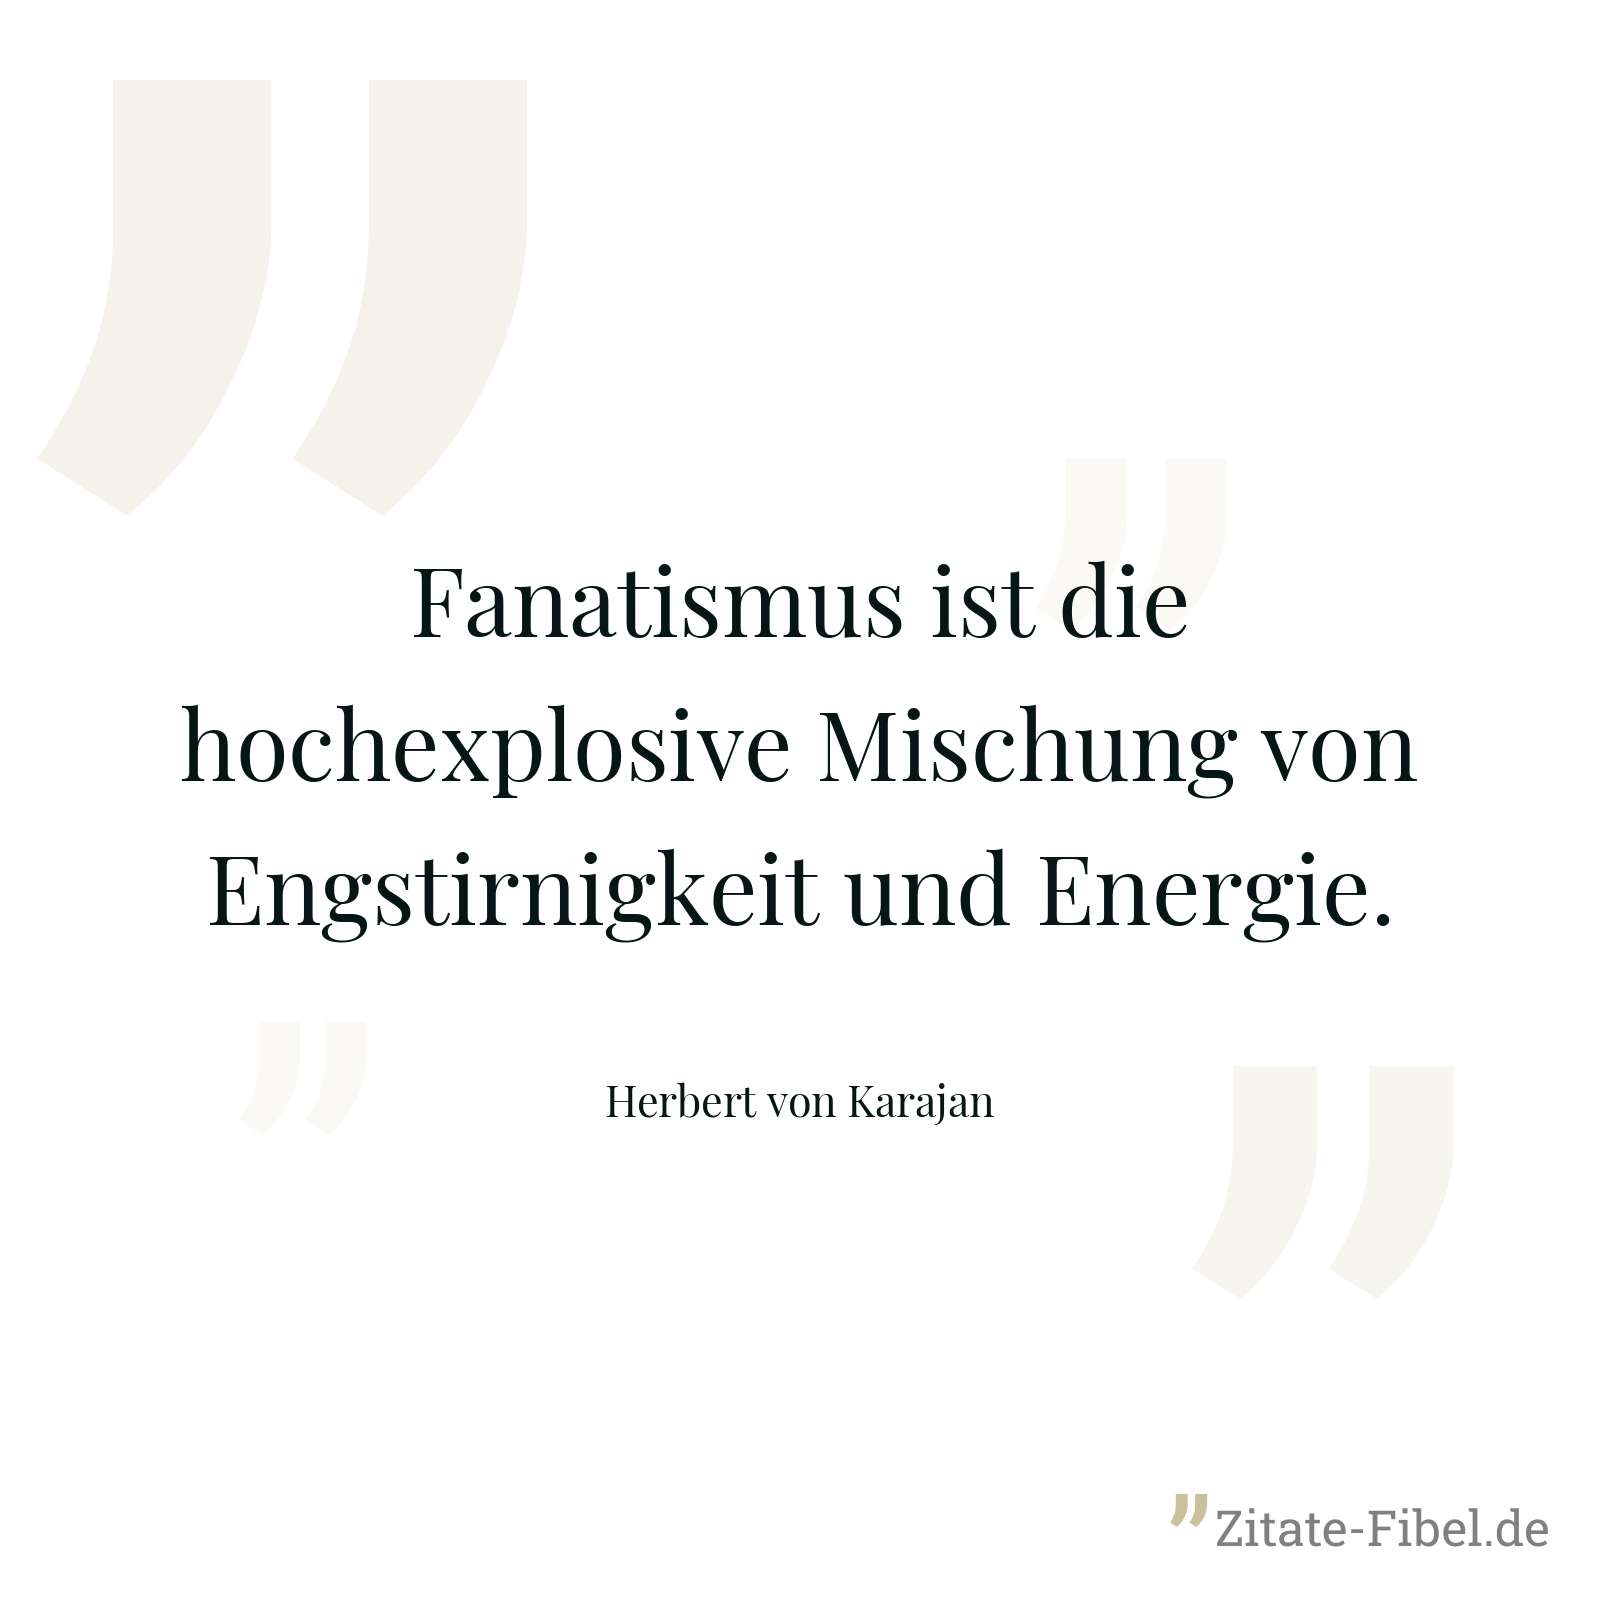 Fanatismus ist die hochexplosive Mischung von Engstirnigkeit und Energie. - Herbert von Karajan